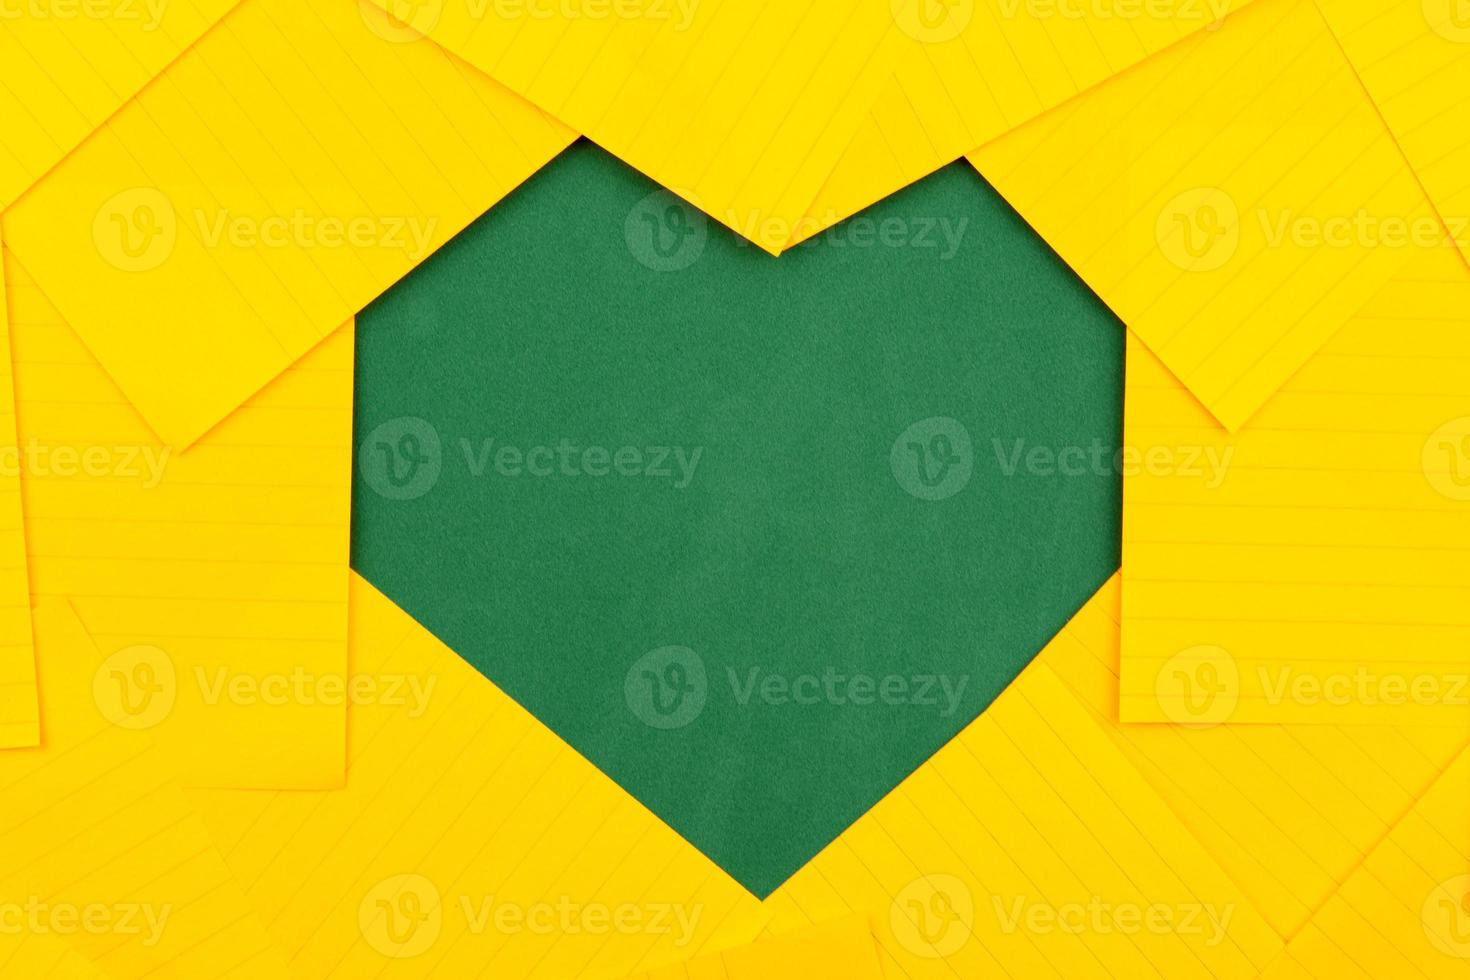 folhas de papel laranja em um conselho escolar verde formam uma moldura em formato de coração foto